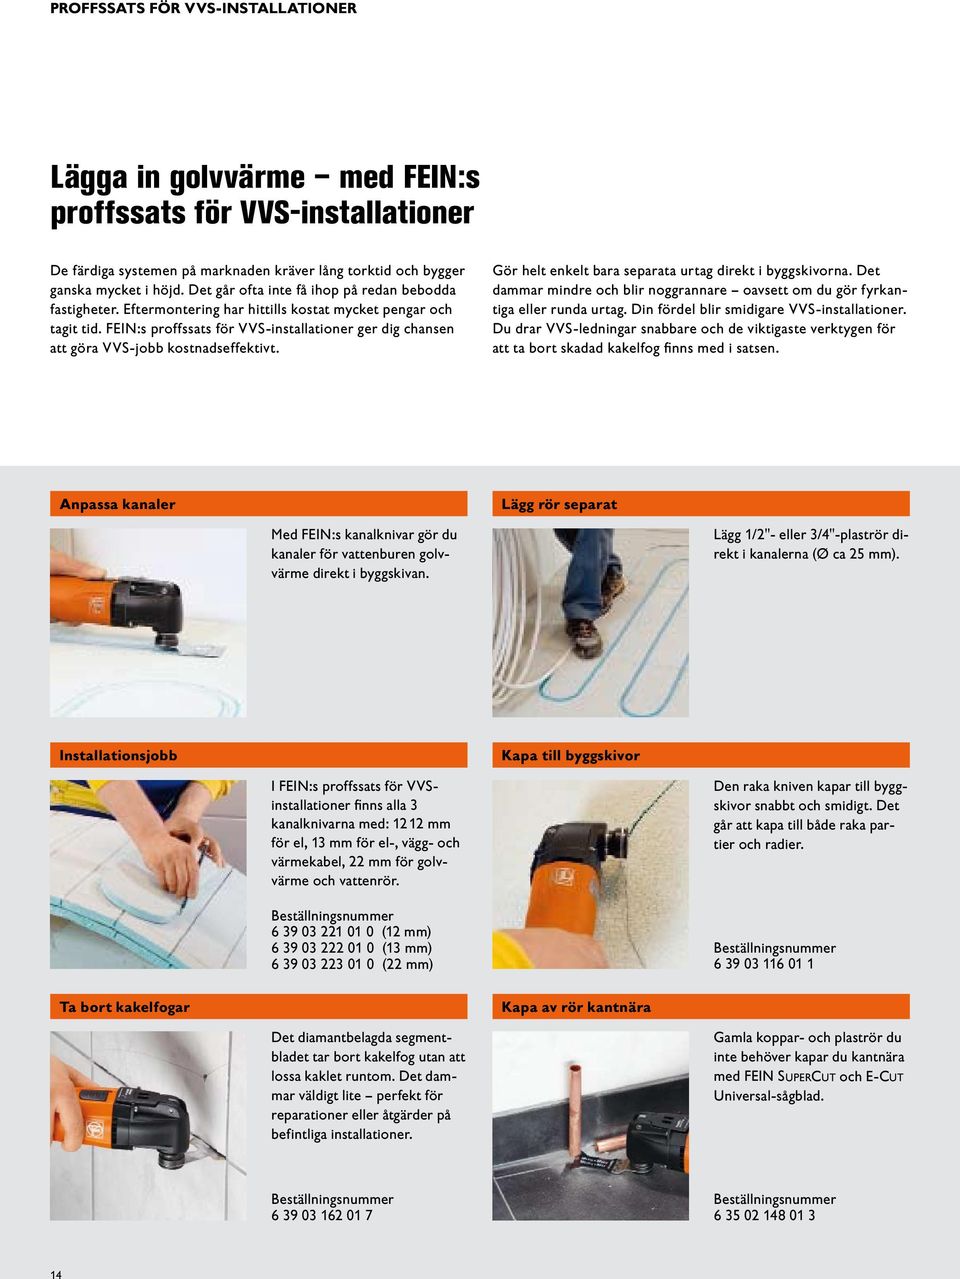 FEIN:s proffssats för VVS-installationer ger dig chansen att göra VVS-jobb kostnadseffektivt. Gör helt enkelt bara separata urtag direkt i byggskivorna.